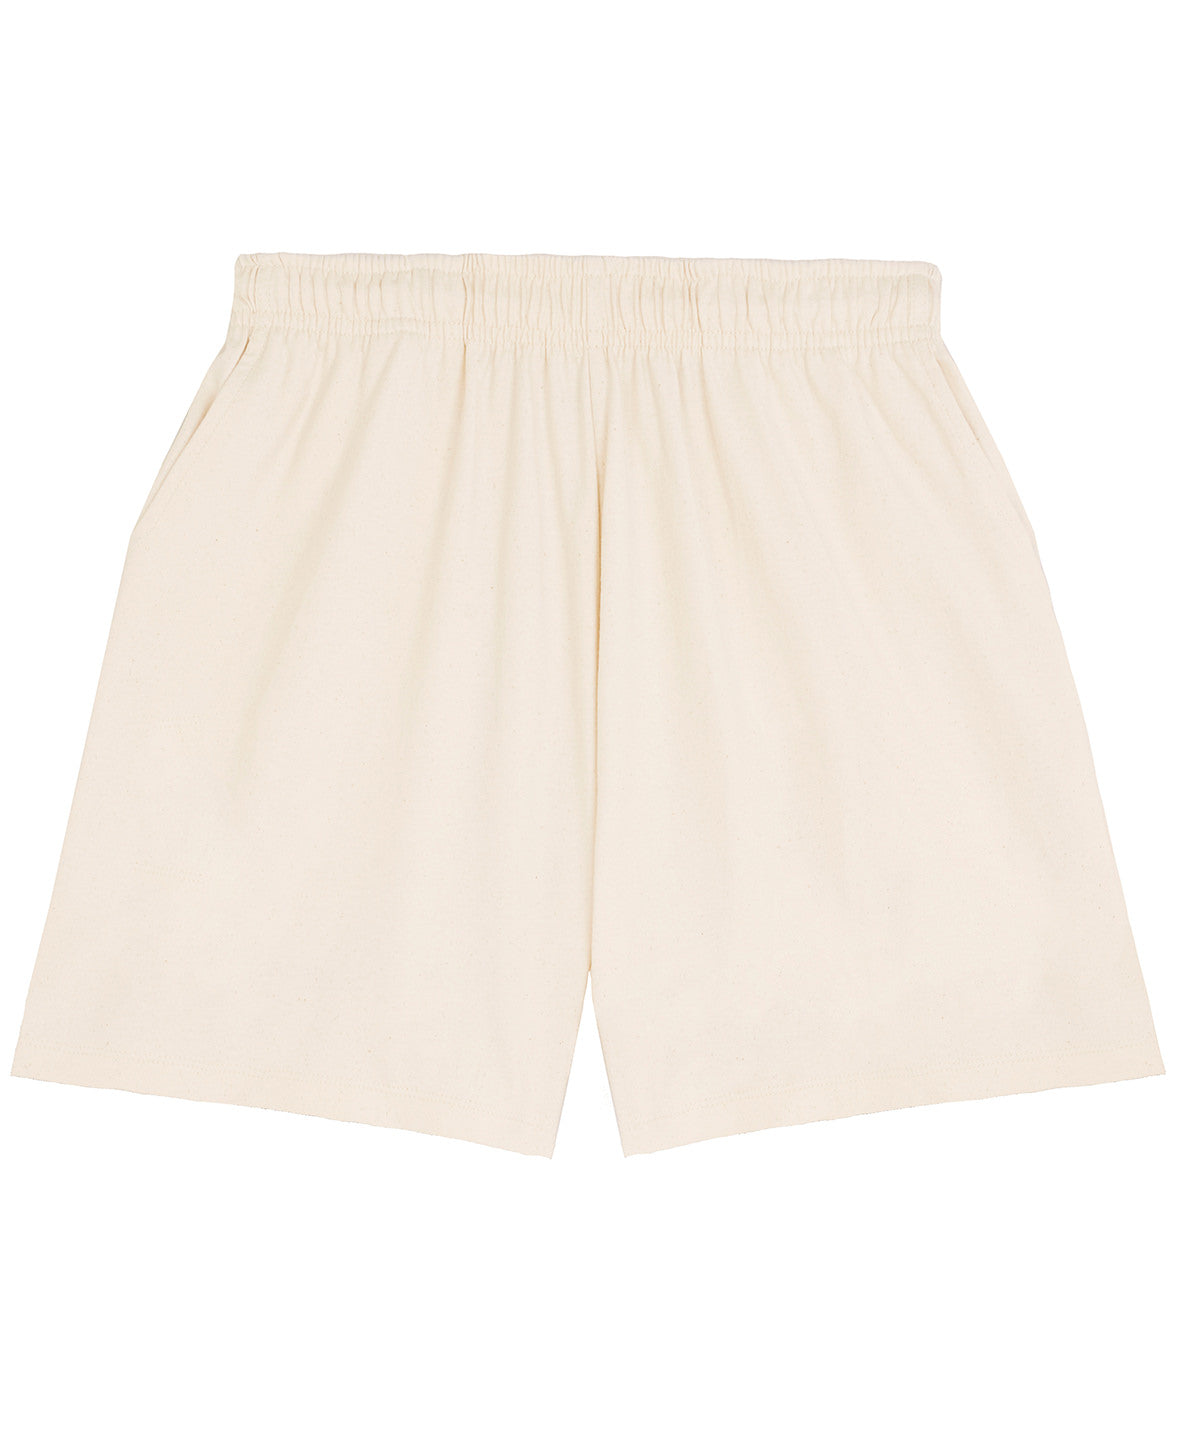 Stuttbuxur - Unisex Waker Shorts (STBU070)